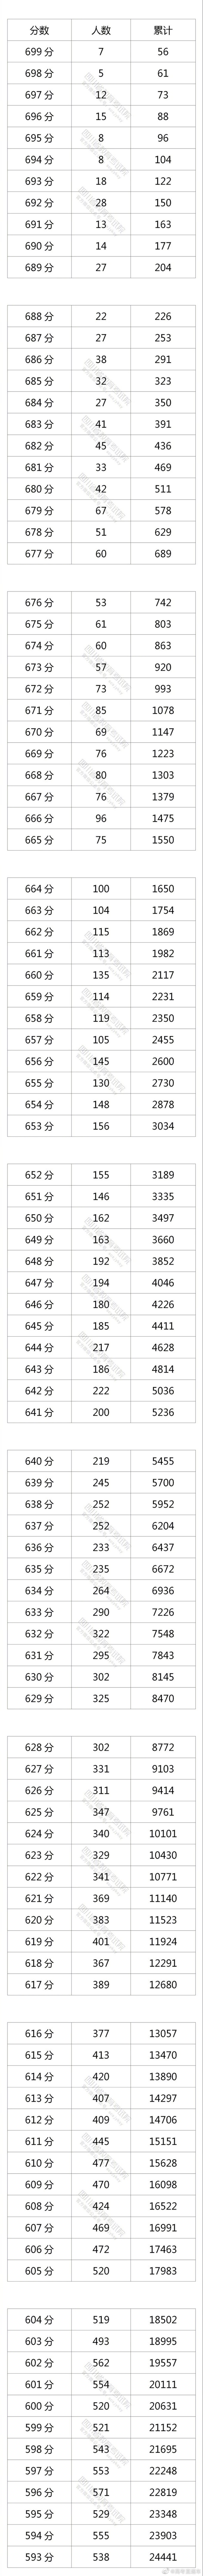 2021四川高考分数线、各批次上线人数、一分一段排名表，优秀！